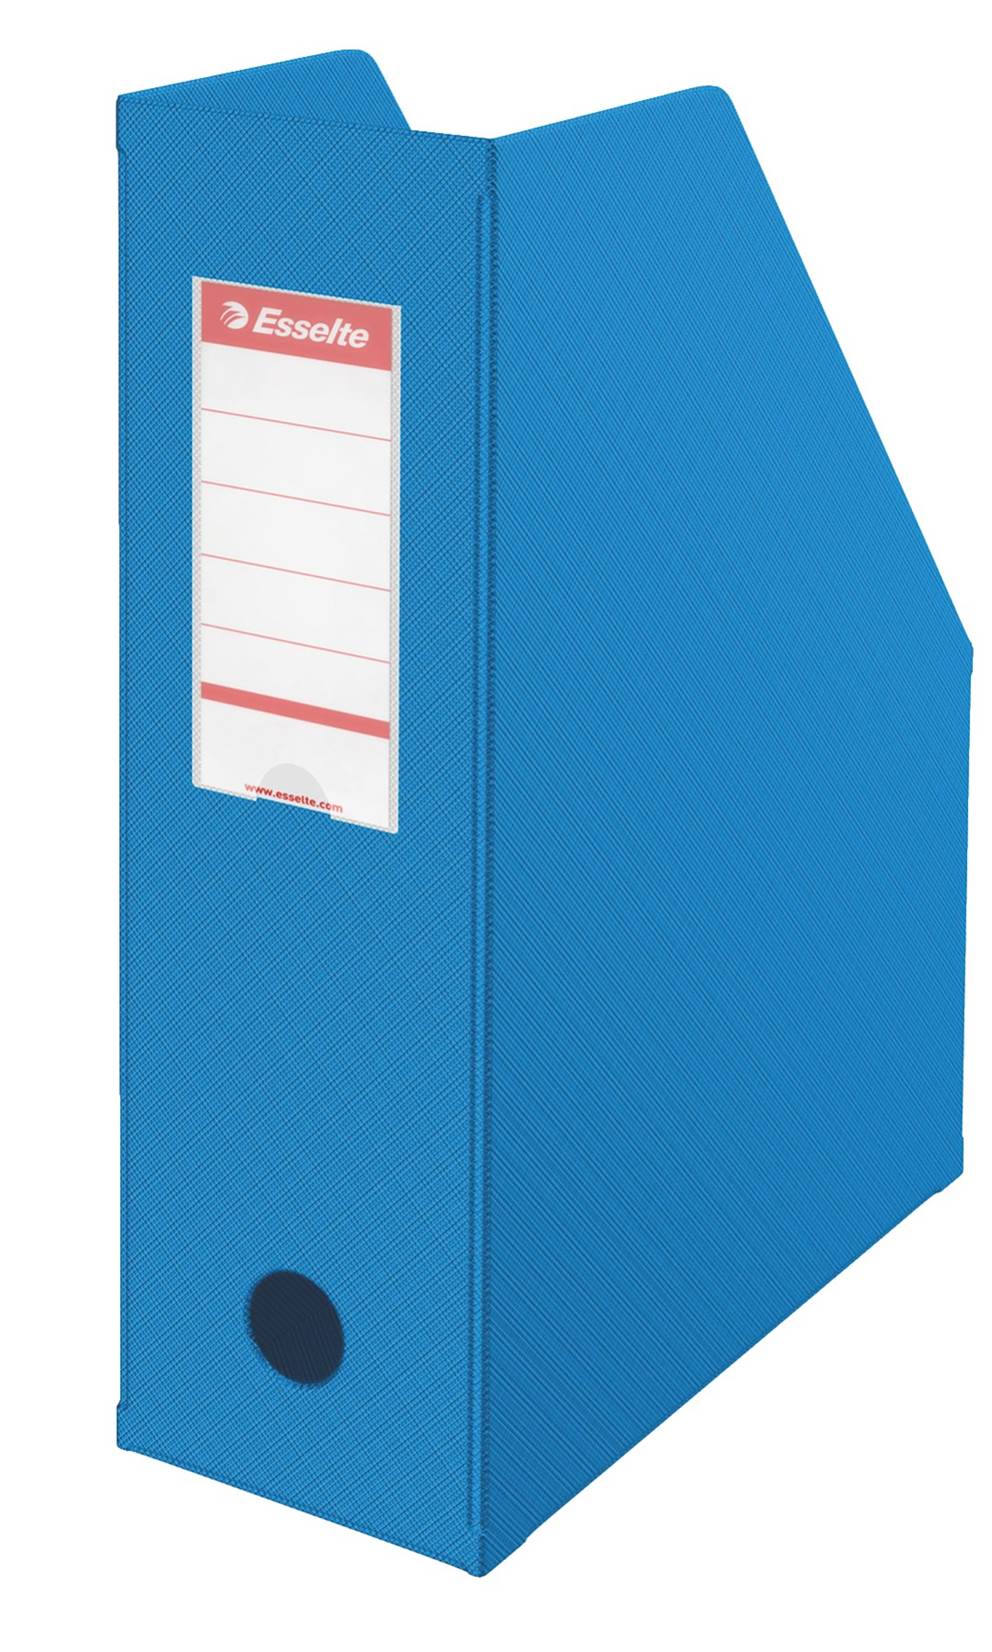 Pojemnik składany Esselte, A4, szer. grzbietu 100 mm, niebieski